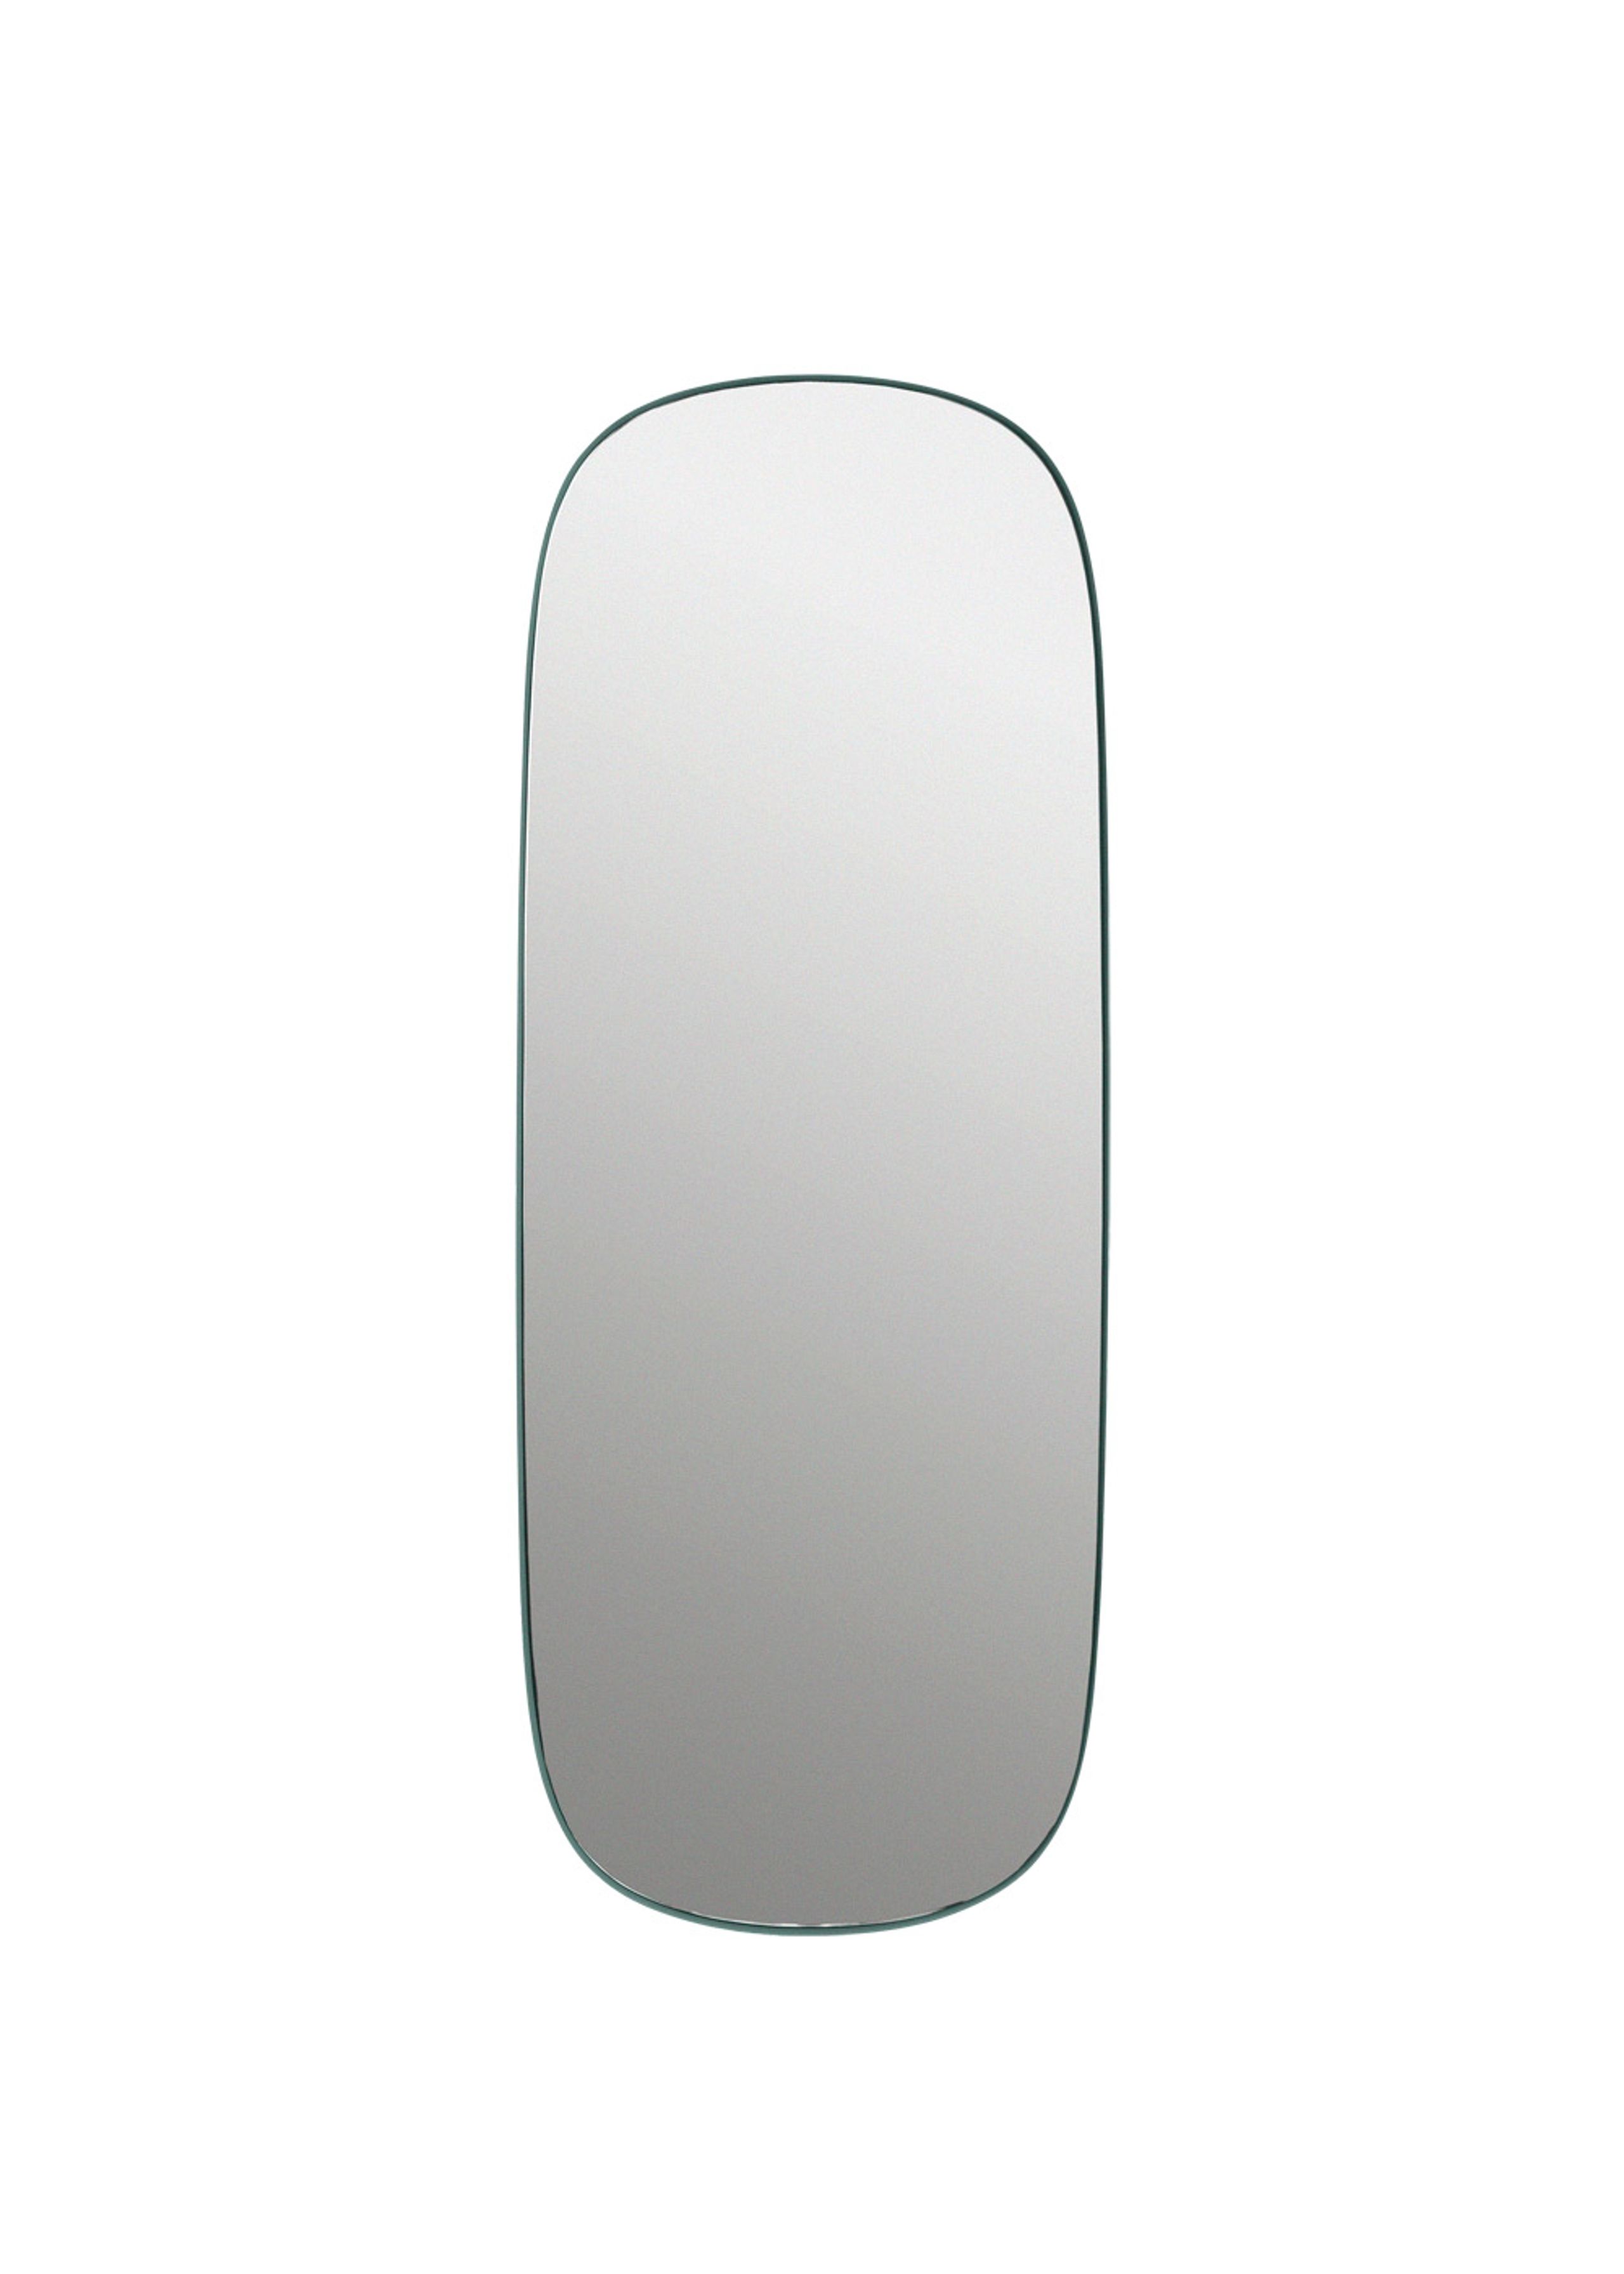 Muuto - Espelho - Framed Mirror - Large - Dark Green/Clear